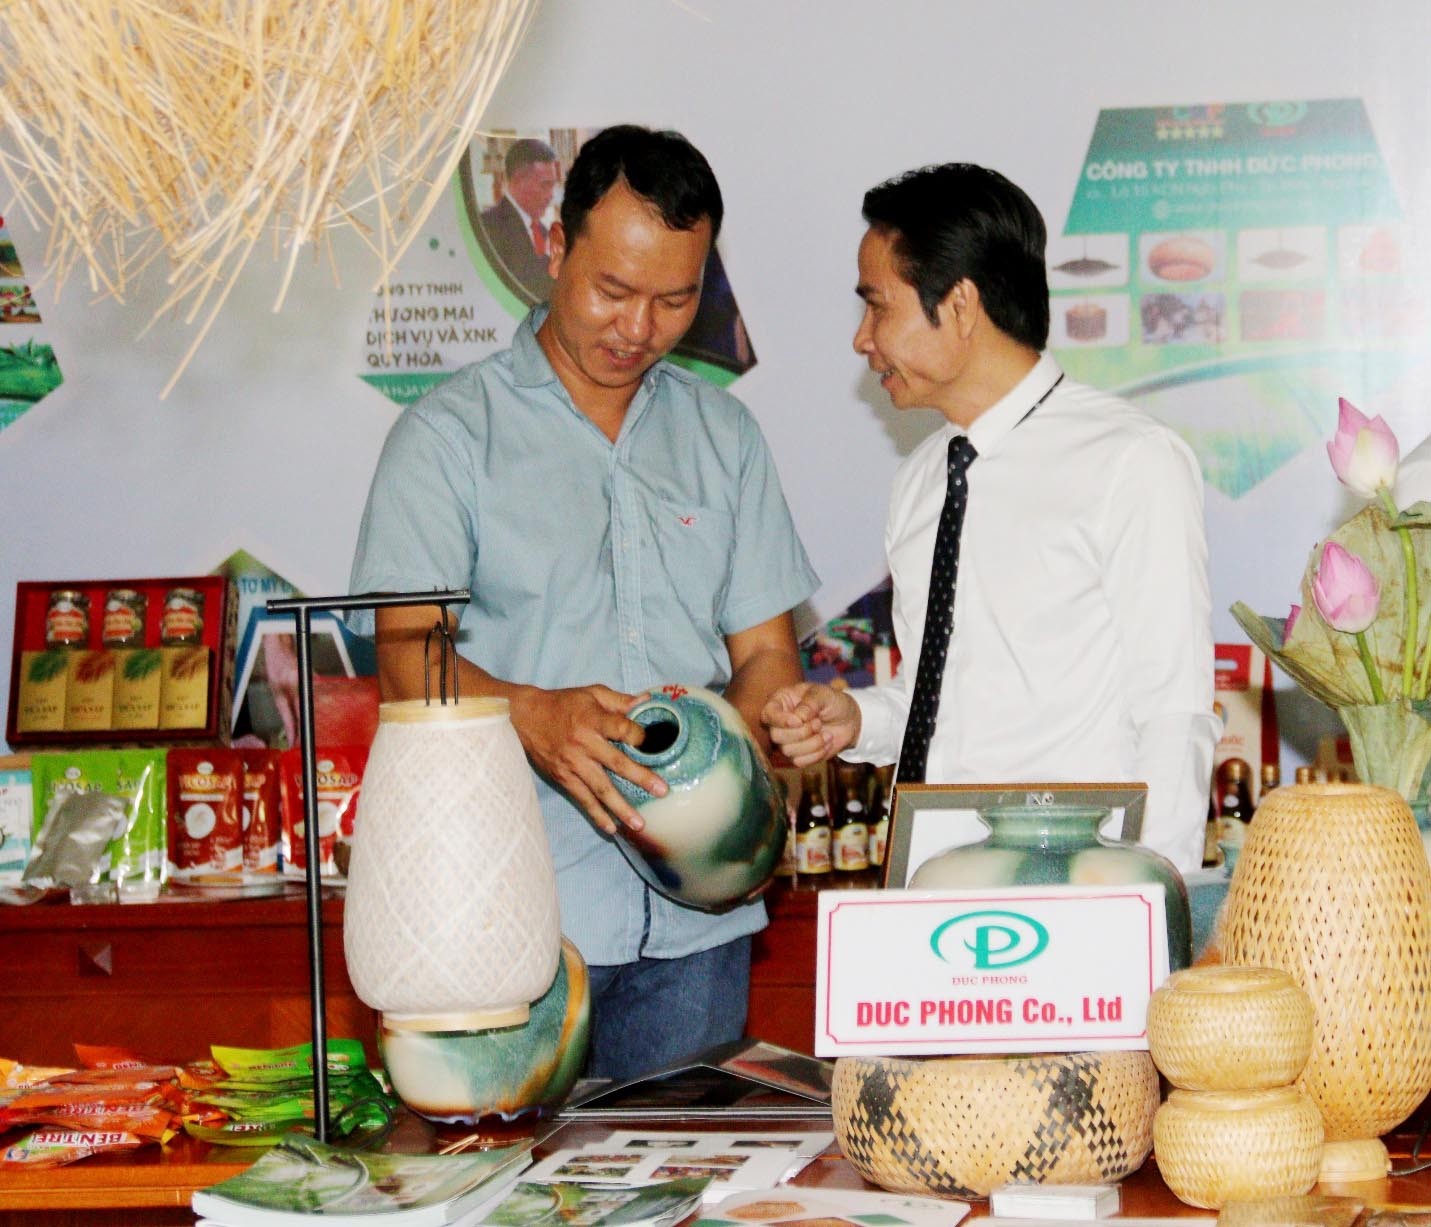 Ông Trần Đức Tân, chủ cơ sở sản xuất gốm sứ Tân Thịnh (áo trắng) đang giới thiệu với khách hàng sản phẩm OCOP vừa được cấp chứng nhận 5 sao cấp Quốc gia. 